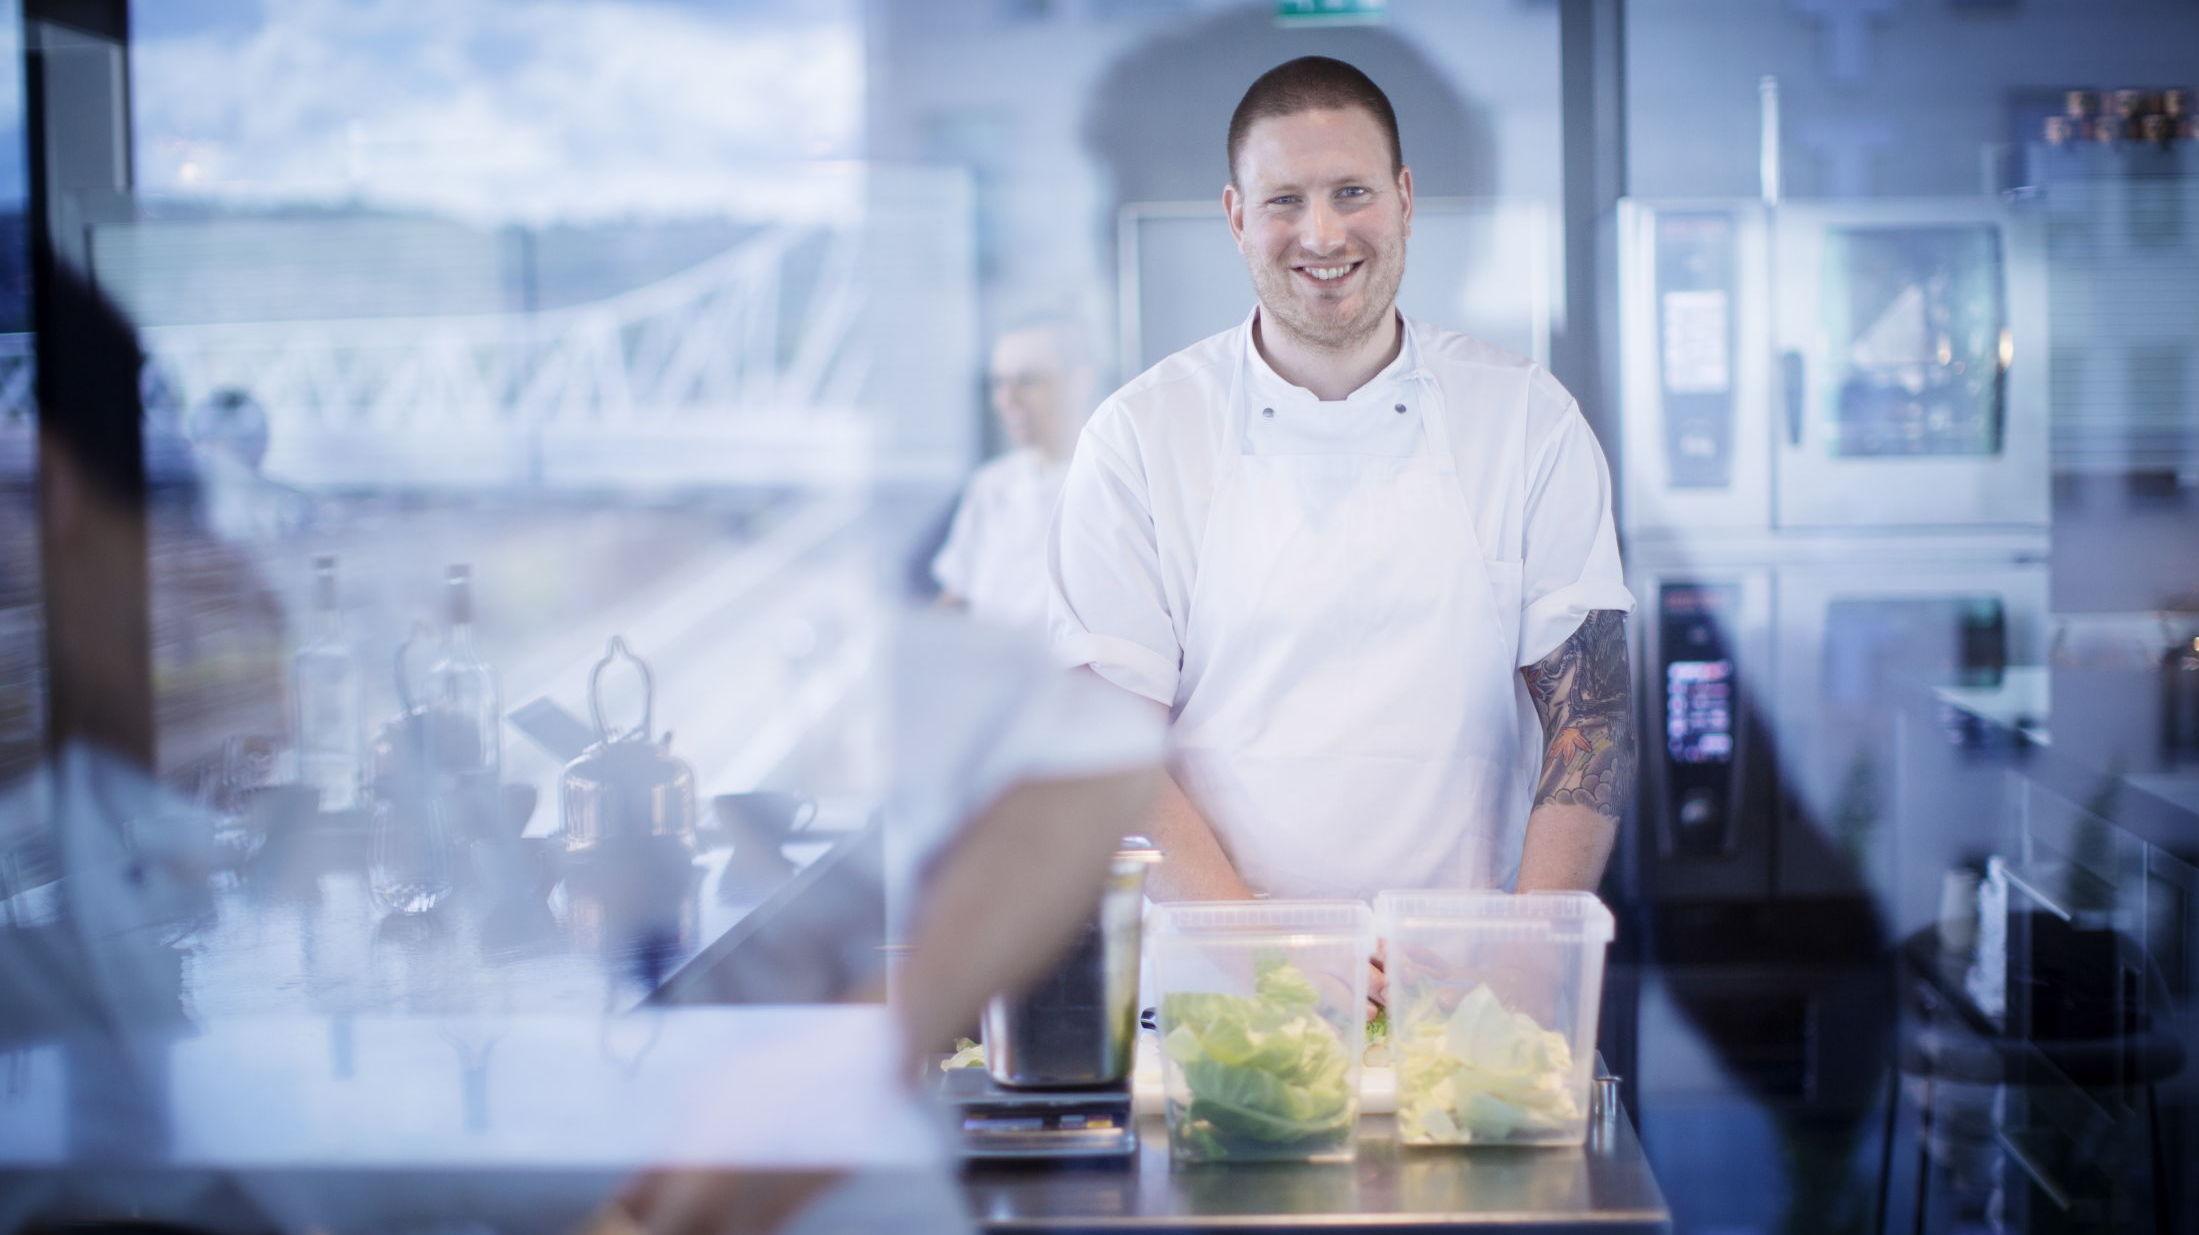 STJERNE: Esben Holmboe Bang er kjøkkensjef på restauranten Maaemo som har to stjerner i Michelin-guiden. På restaurantkjøkkenet har han full kontroll. Foto: Kyrre Lien/VG